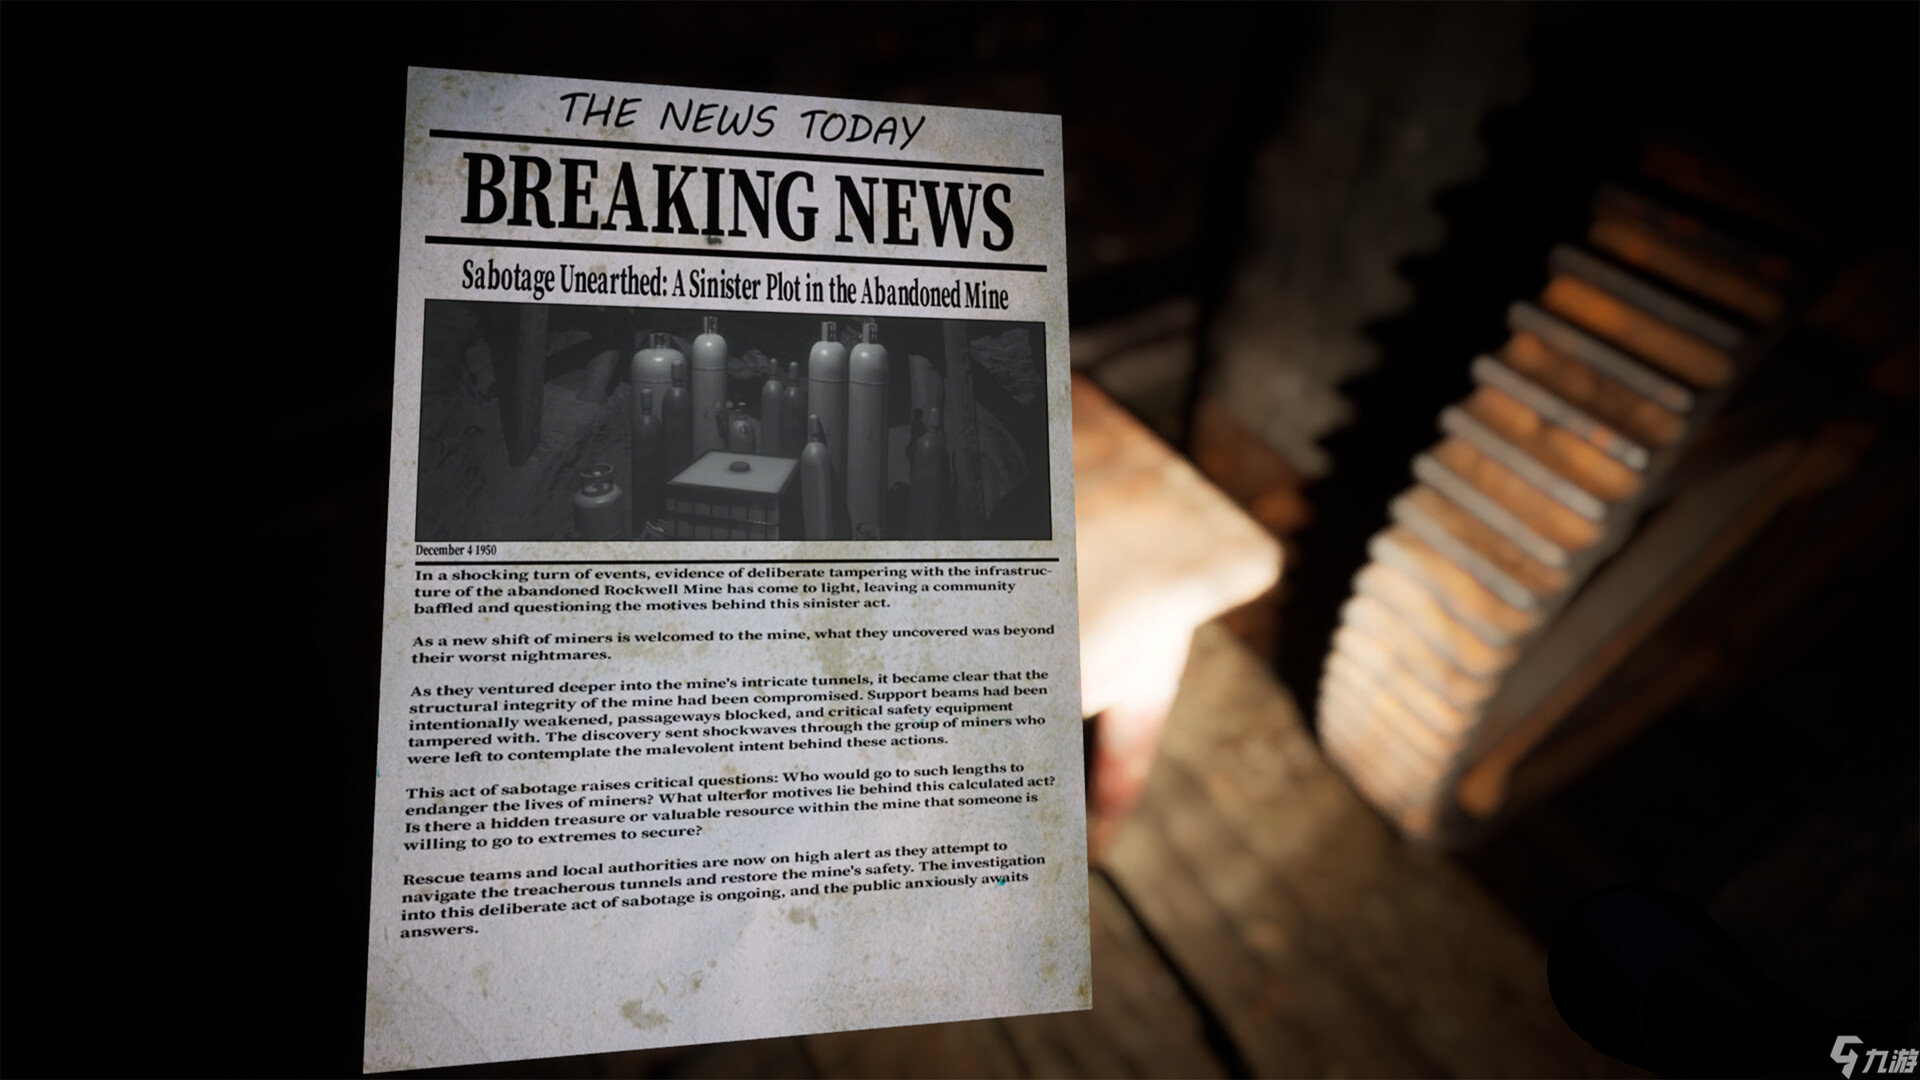 第一人称心理恐怖游戏《THE DESCENT》 现已在Steam正式发售